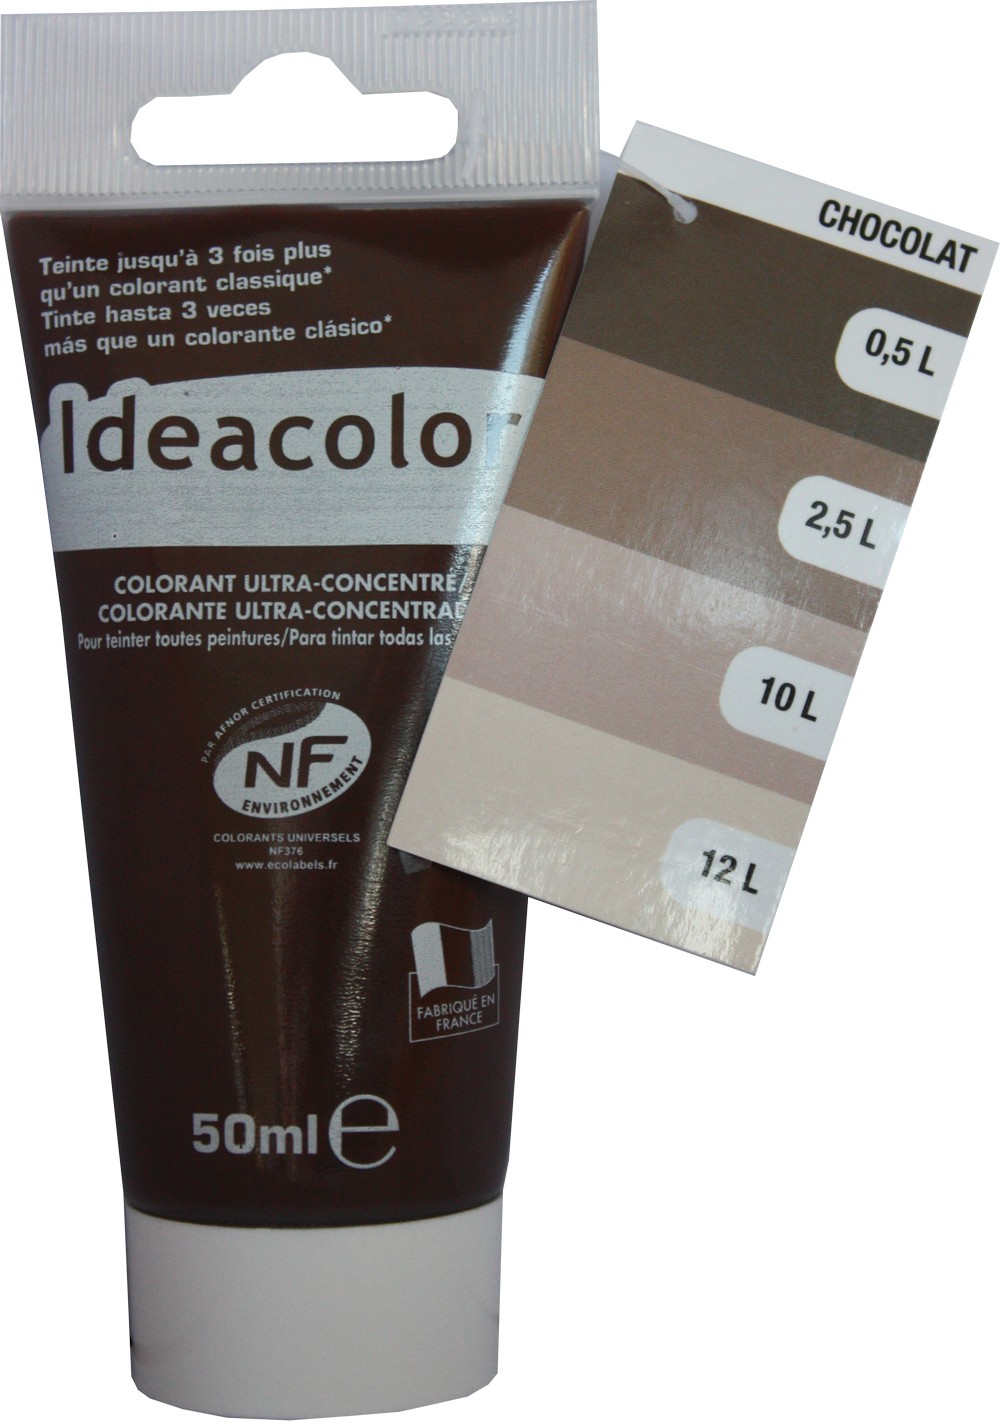 Colorant universel pour peinture chocolat glacé 50ml - IDEACOLOR